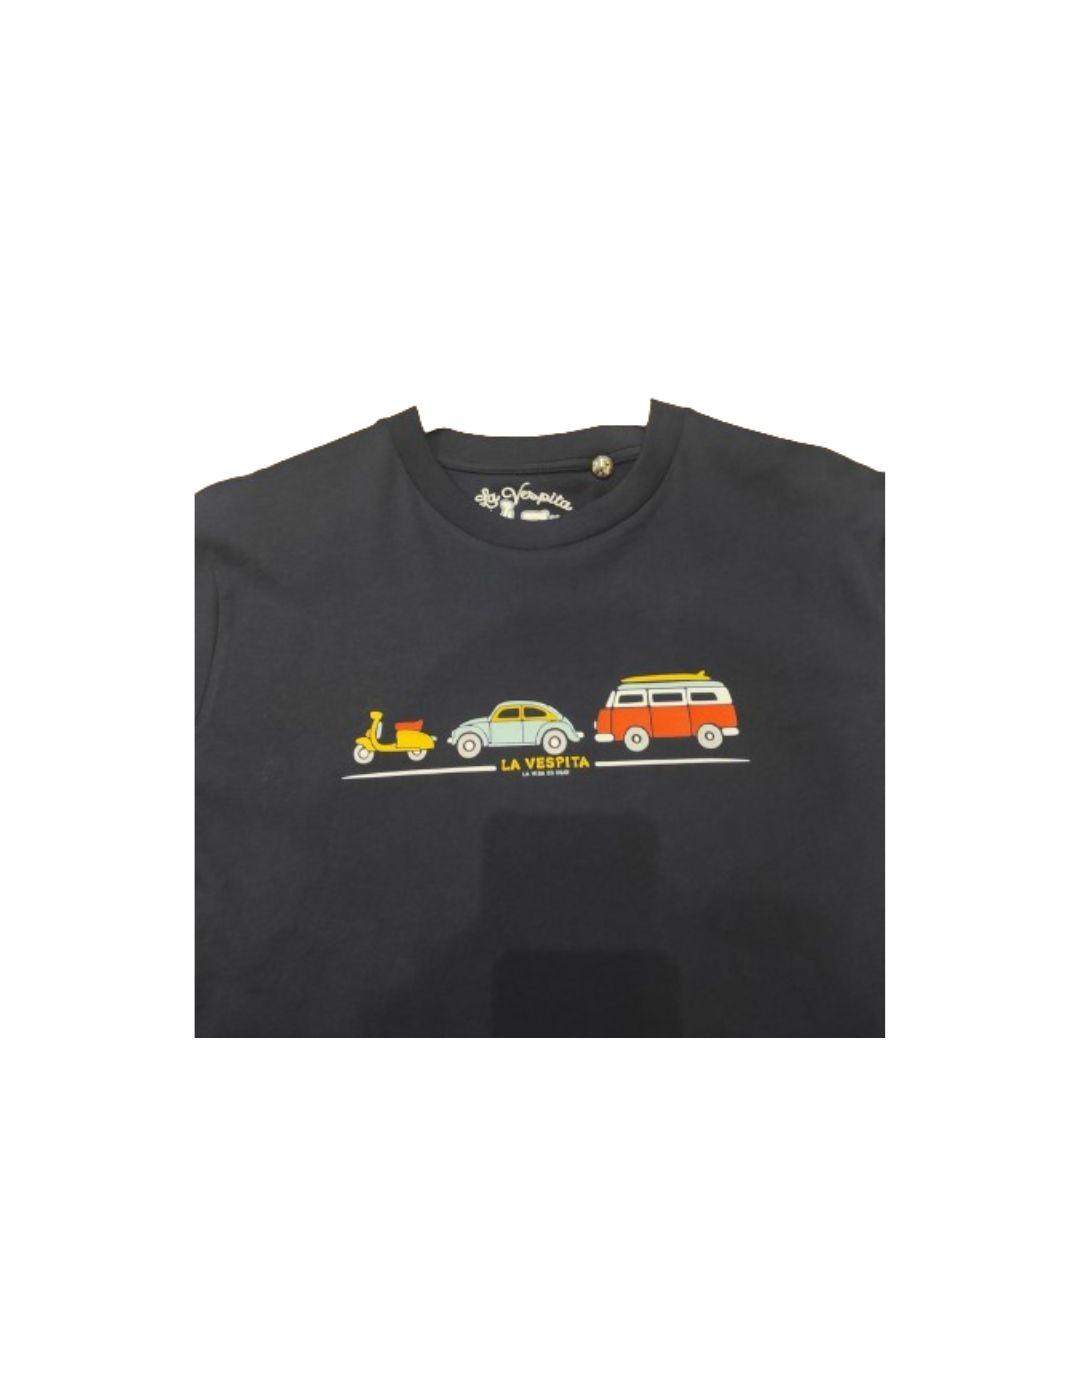 Camiseta La Vespita en algodón con automóviles.